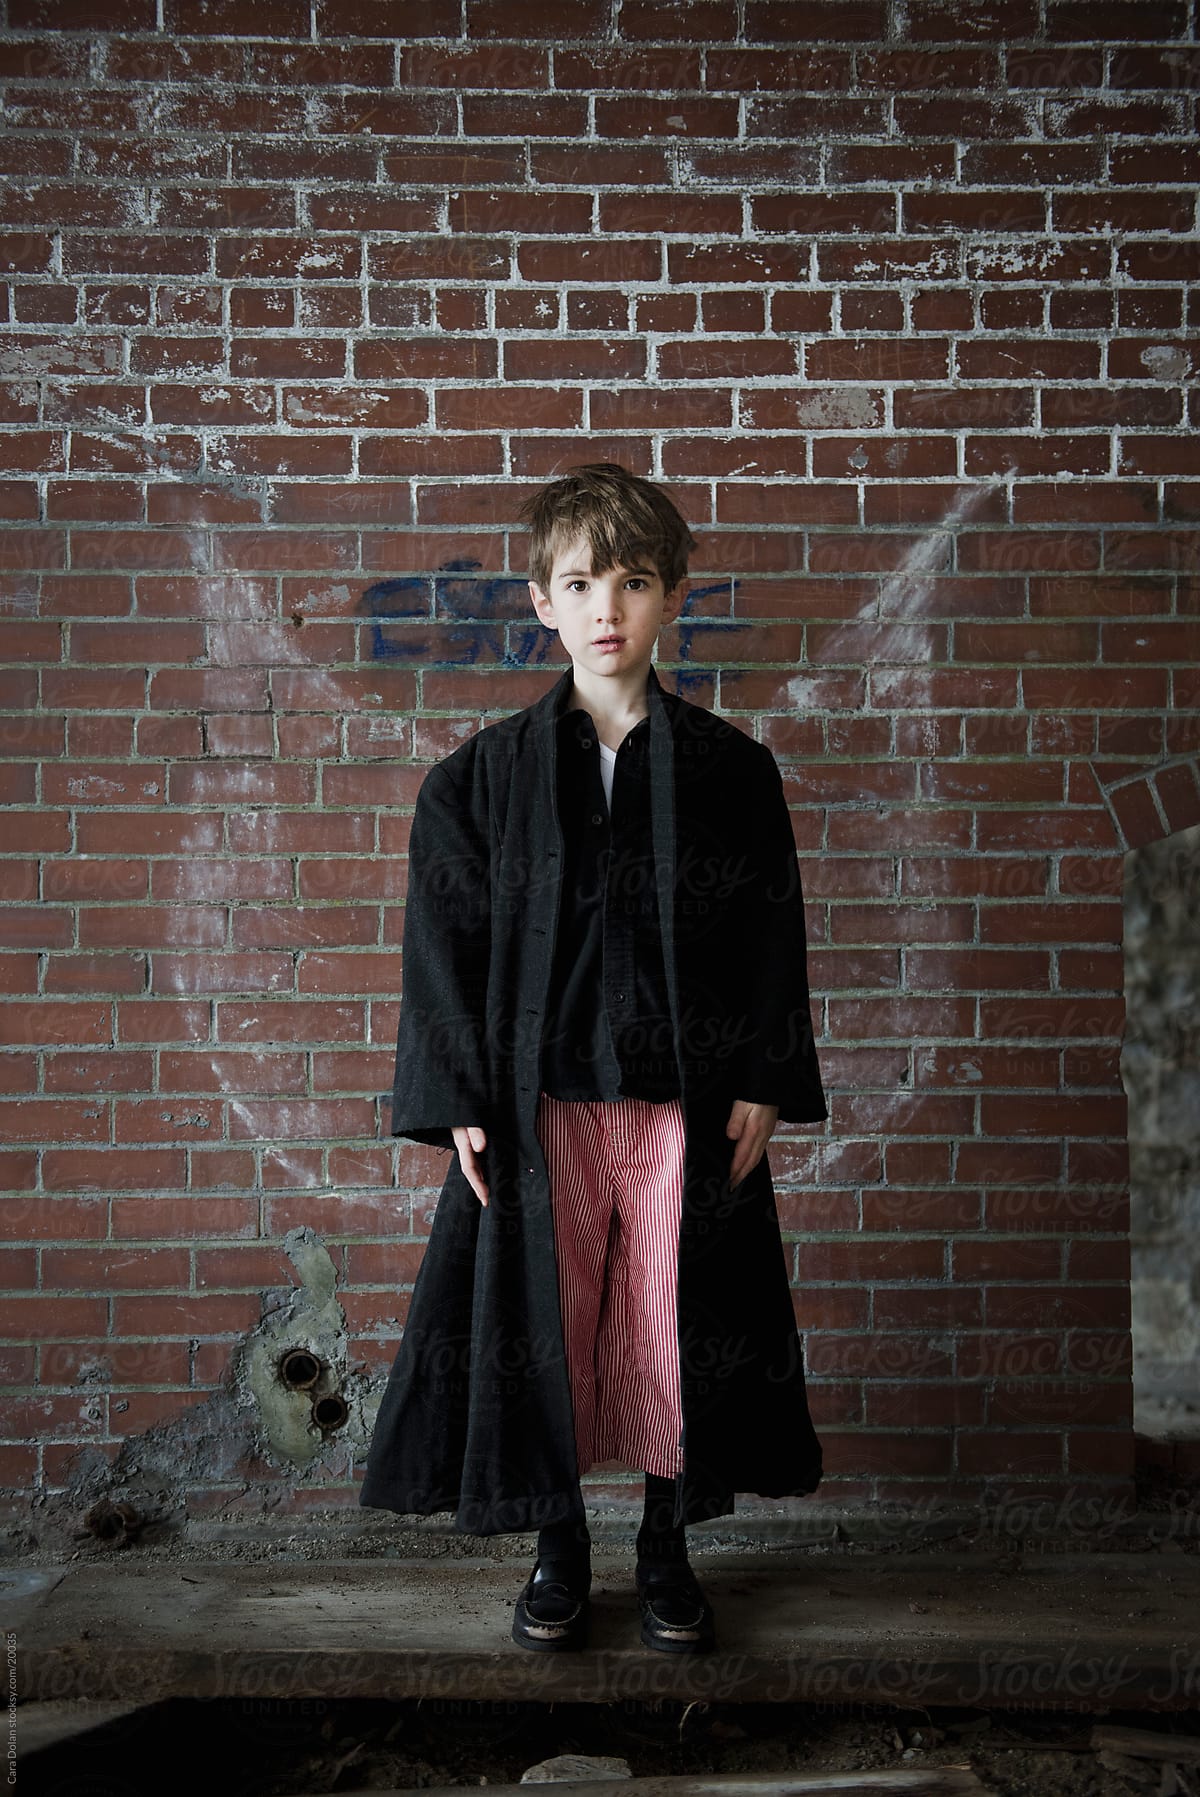 Boy has graffiti wings in an abandoned brick building